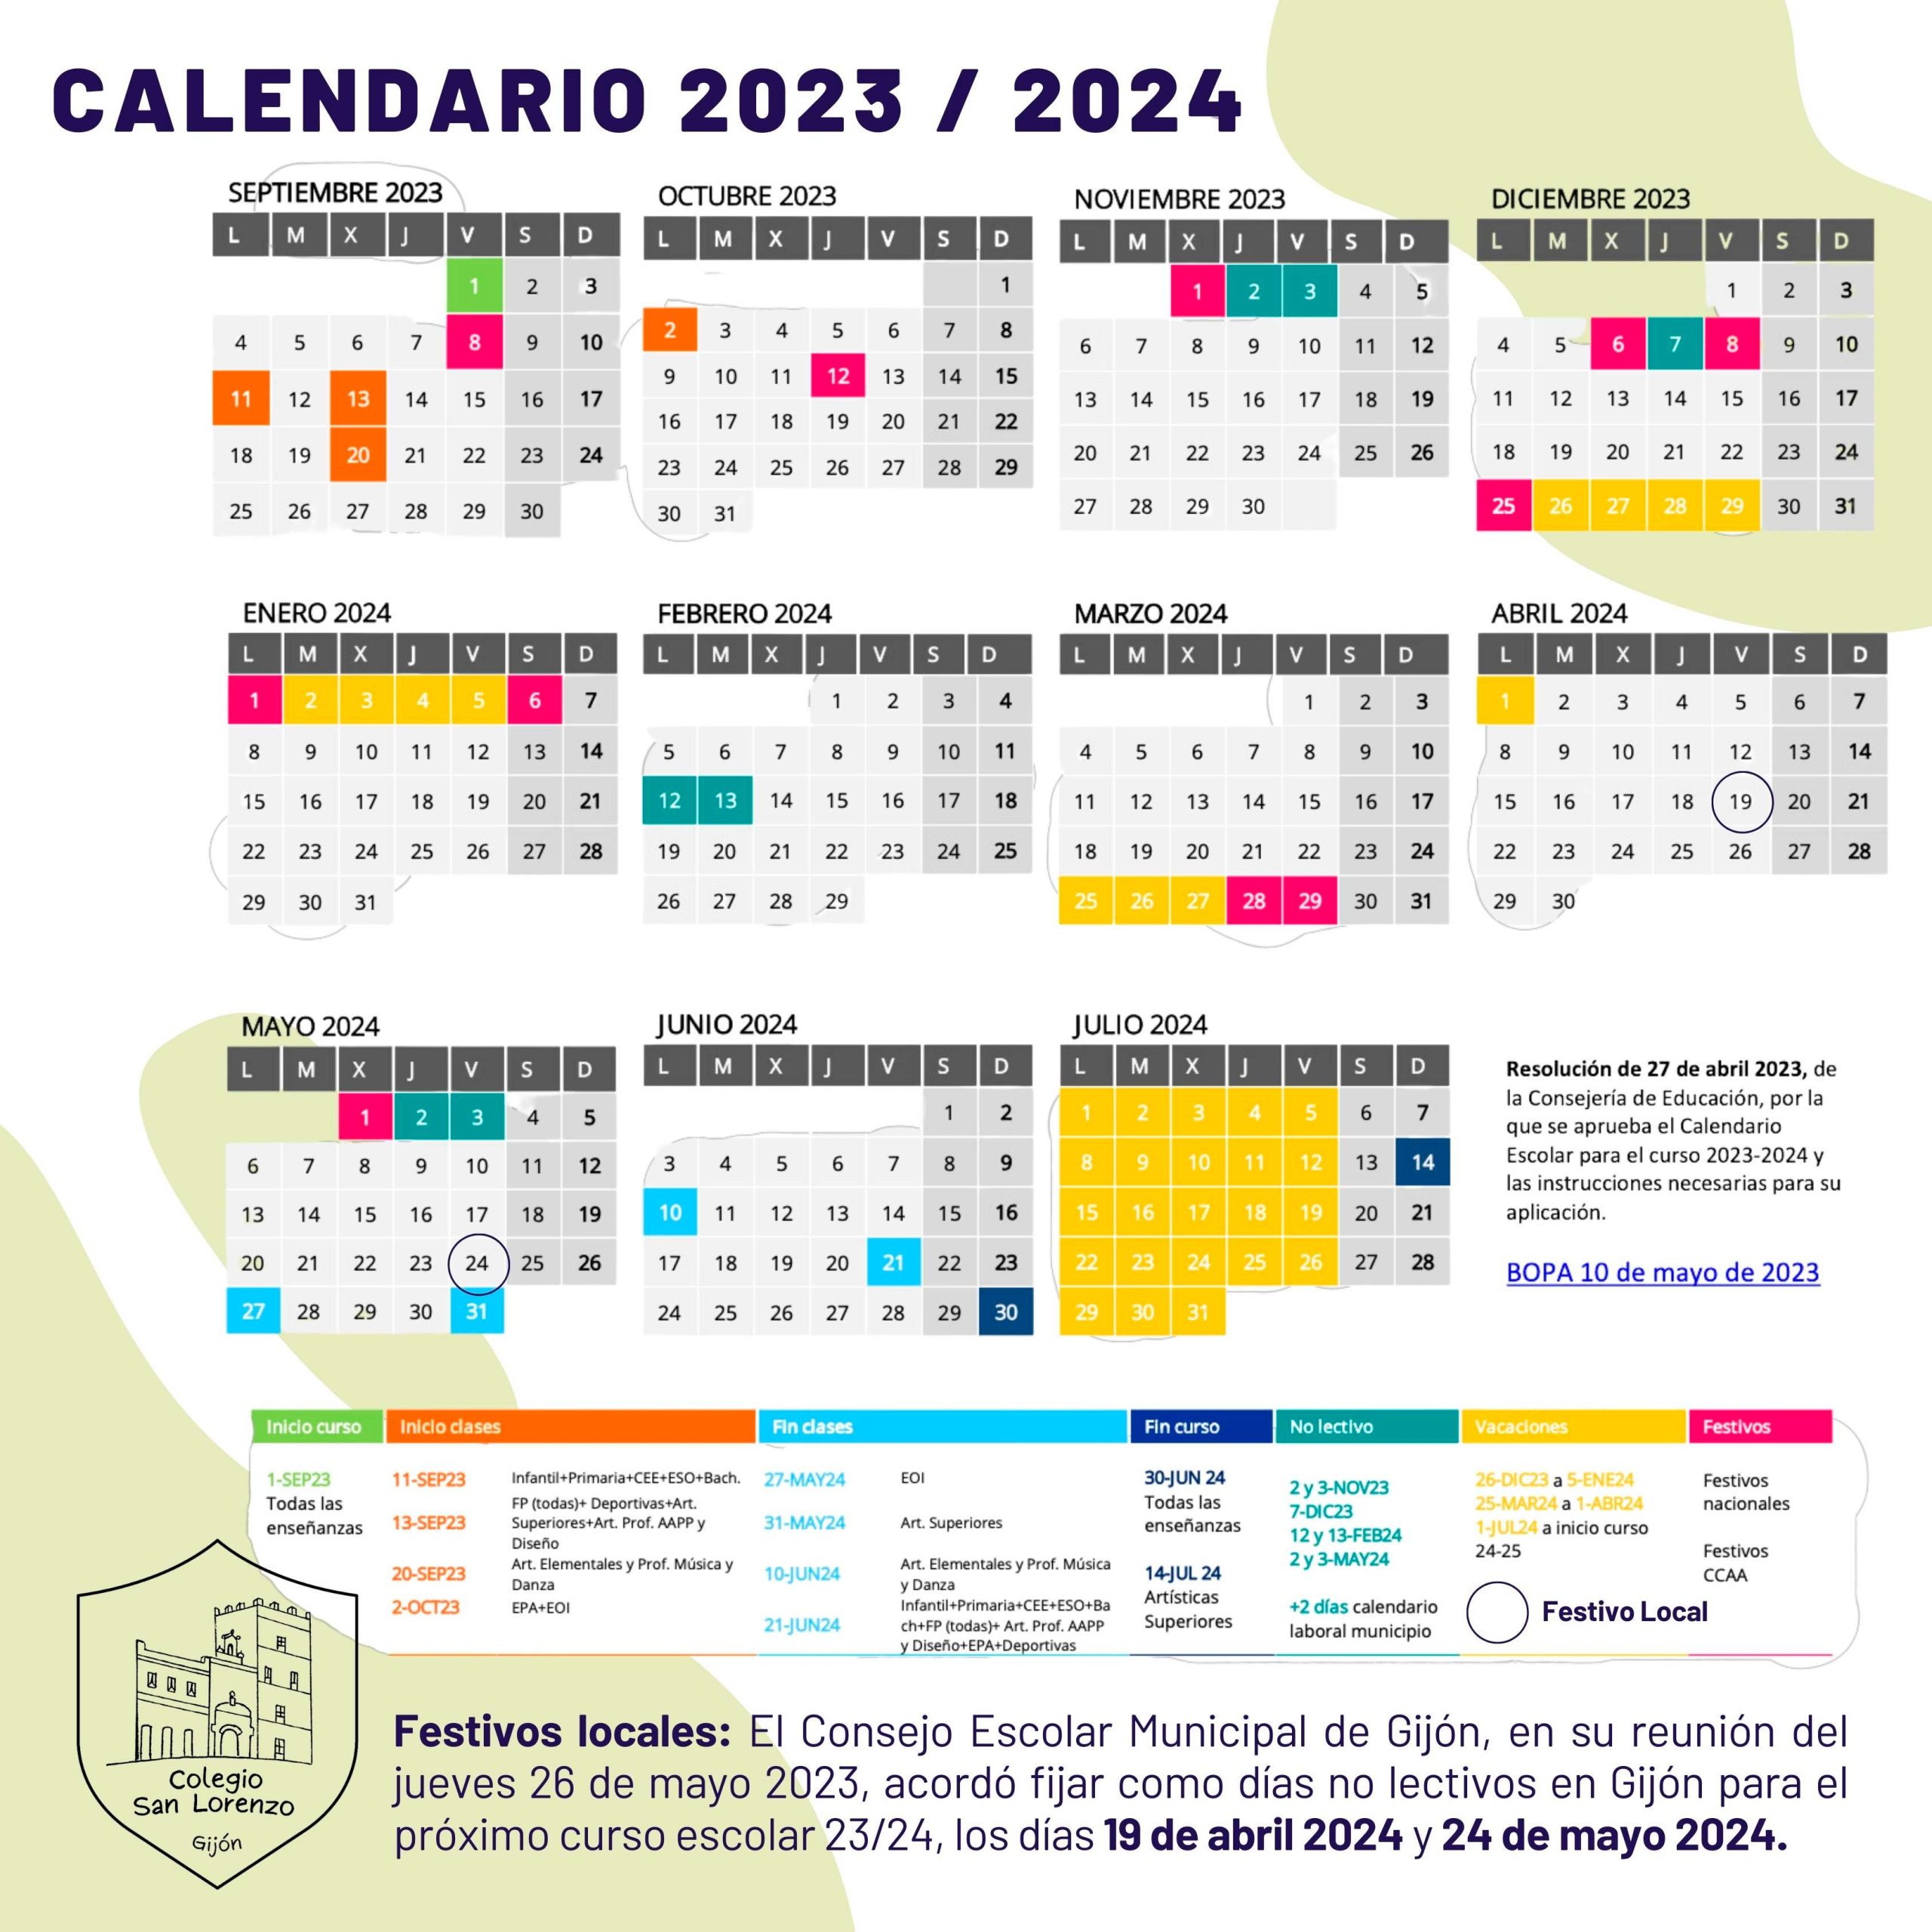 Calendario escolar curso 2023/24 Colegio San Lorenzo Gijón